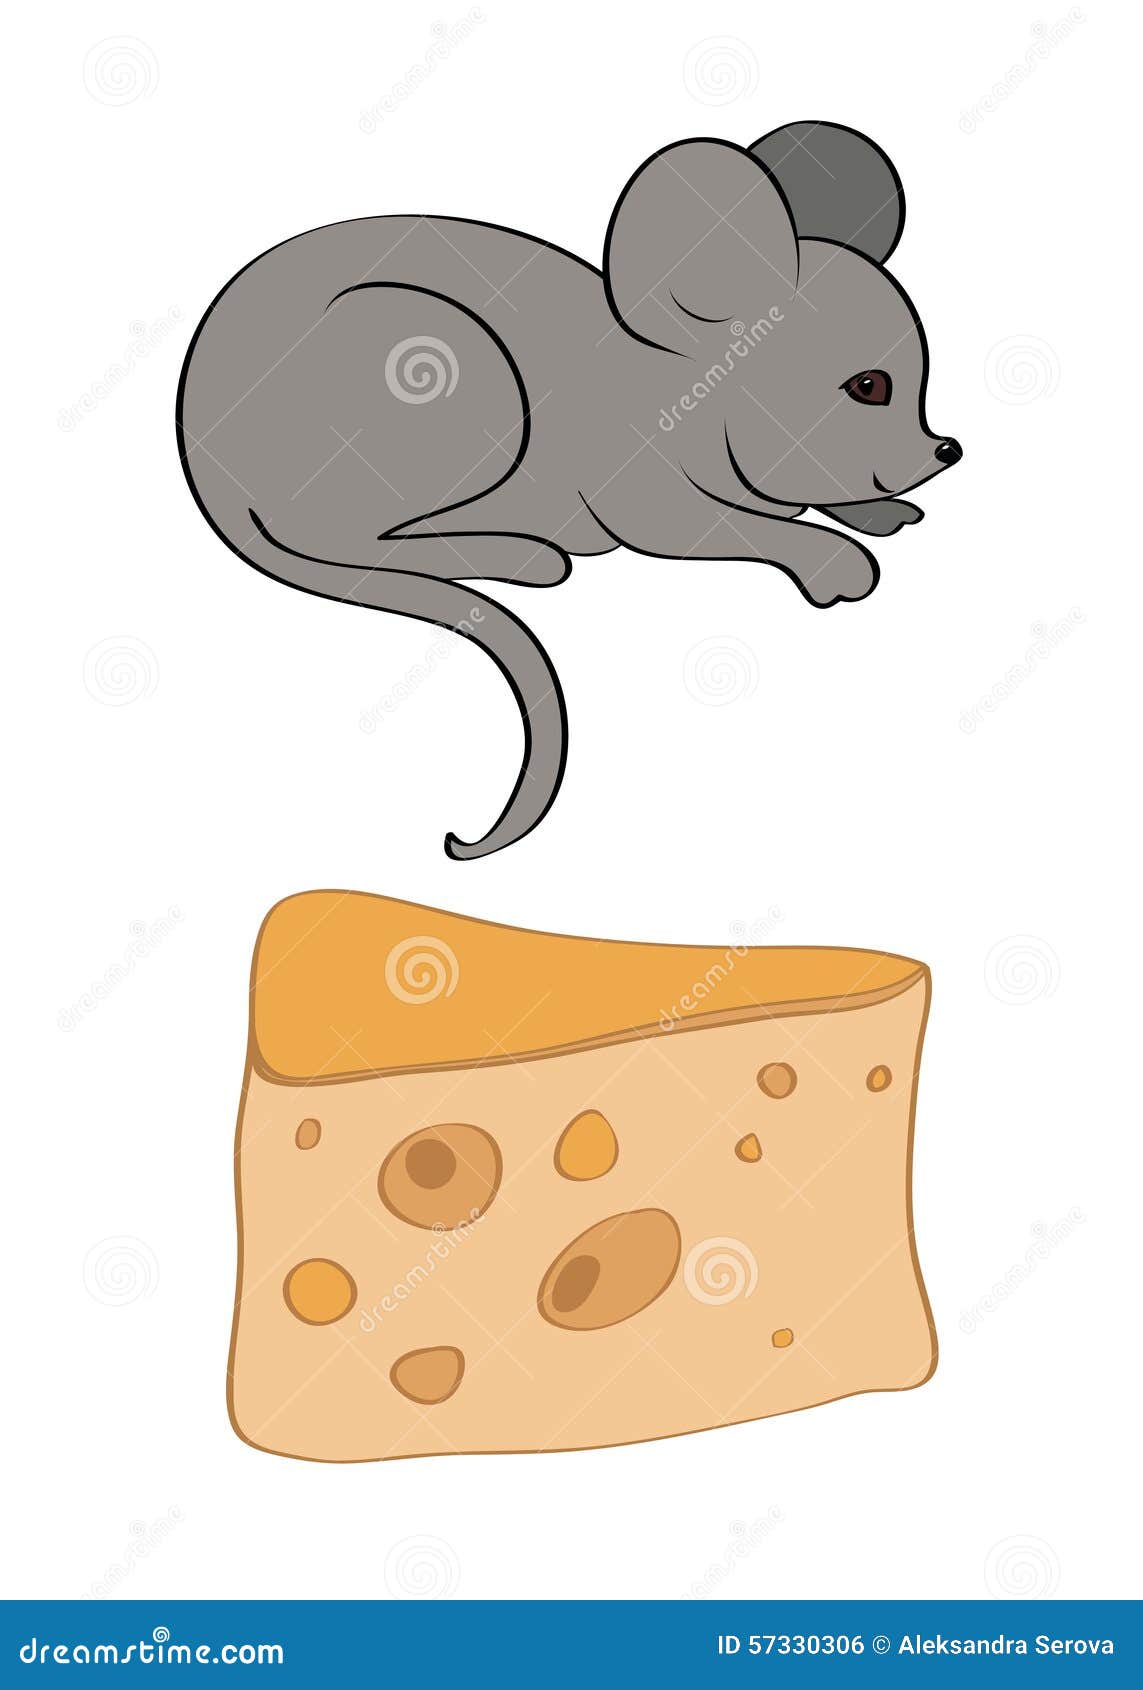 Угостим мышку сыром